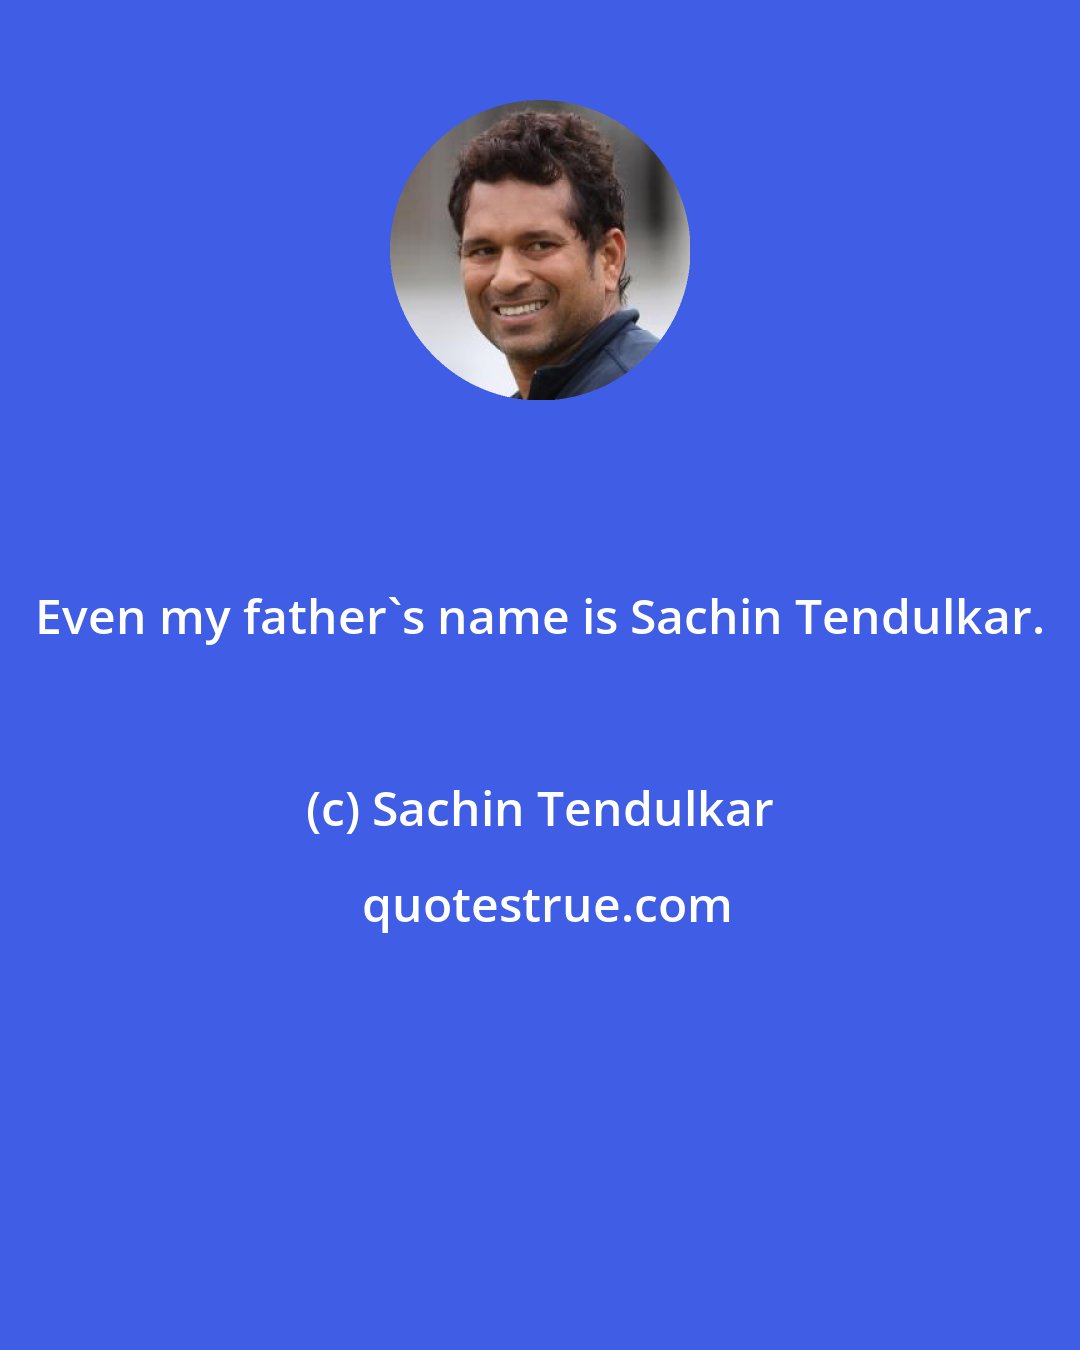 Sachin Tendulkar: Even my father's name is Sachin Tendulkar.